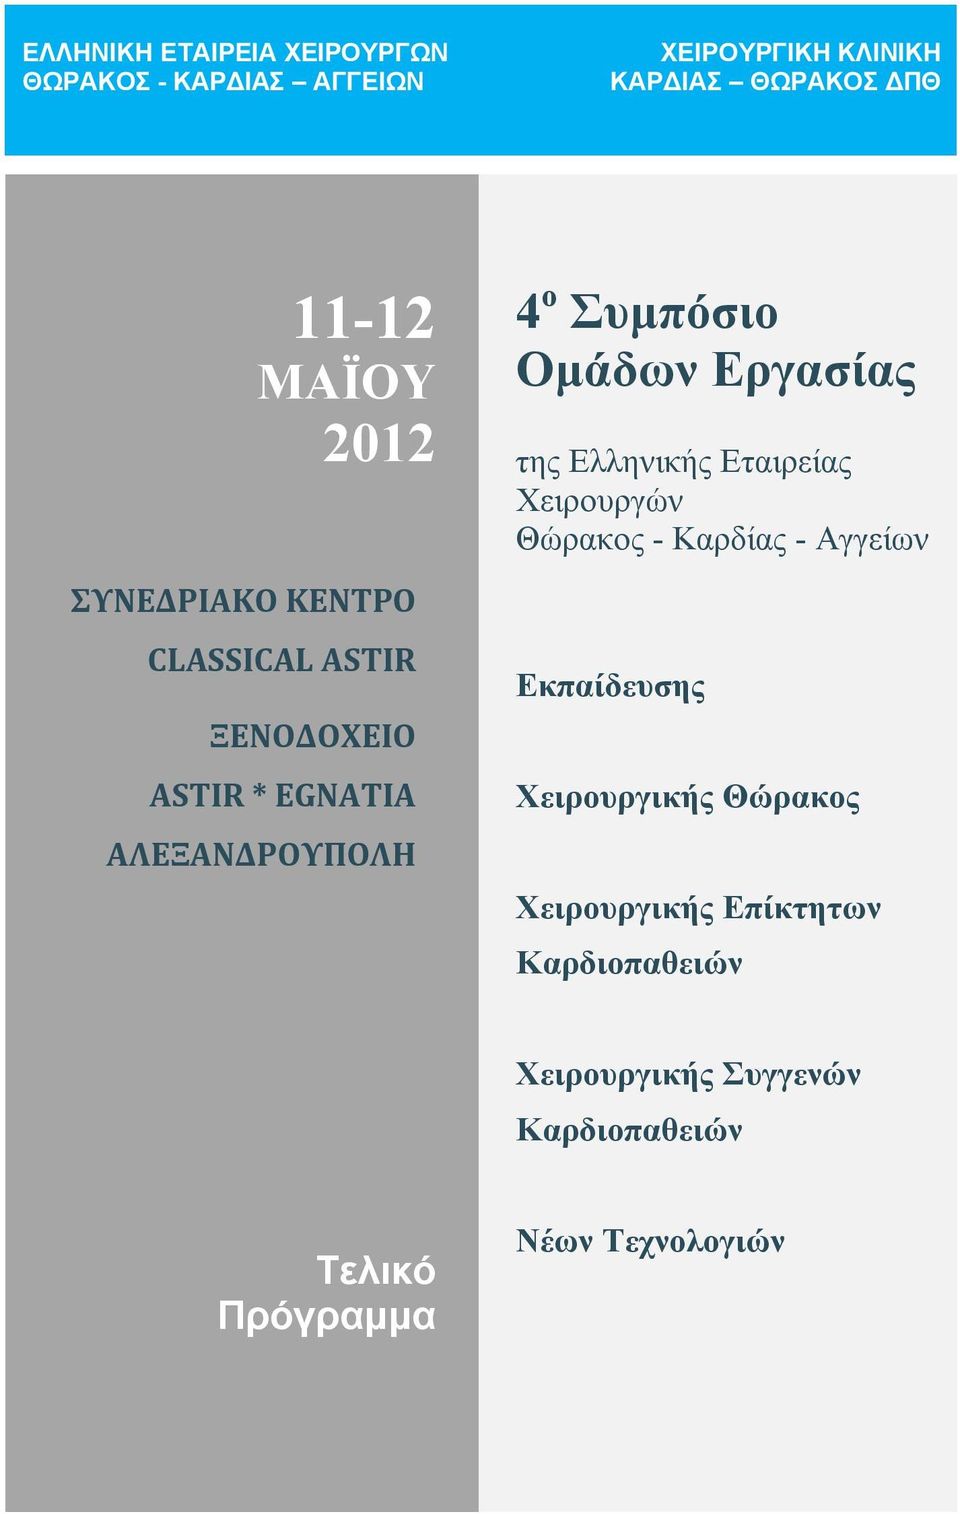 Ομάδων Εργασίας της Ελληνικής Εταιρείας Χειρουργών Θώρακος - Καρδίας - Αγγείων Εκπαίδευσης Χειρουργικής